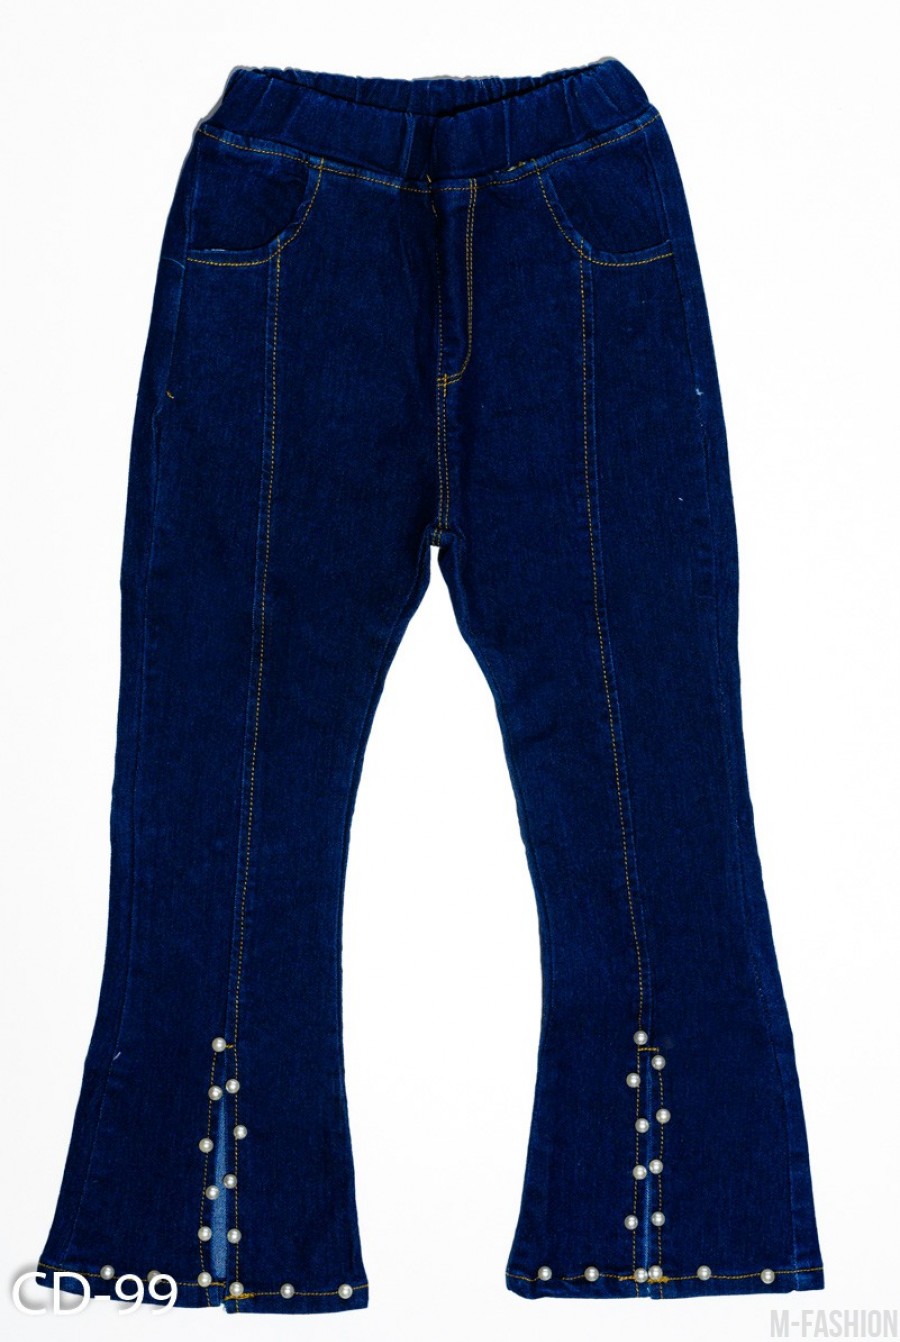 Синие джинсы модели клеш с клиньями и бусинами - Фото 1